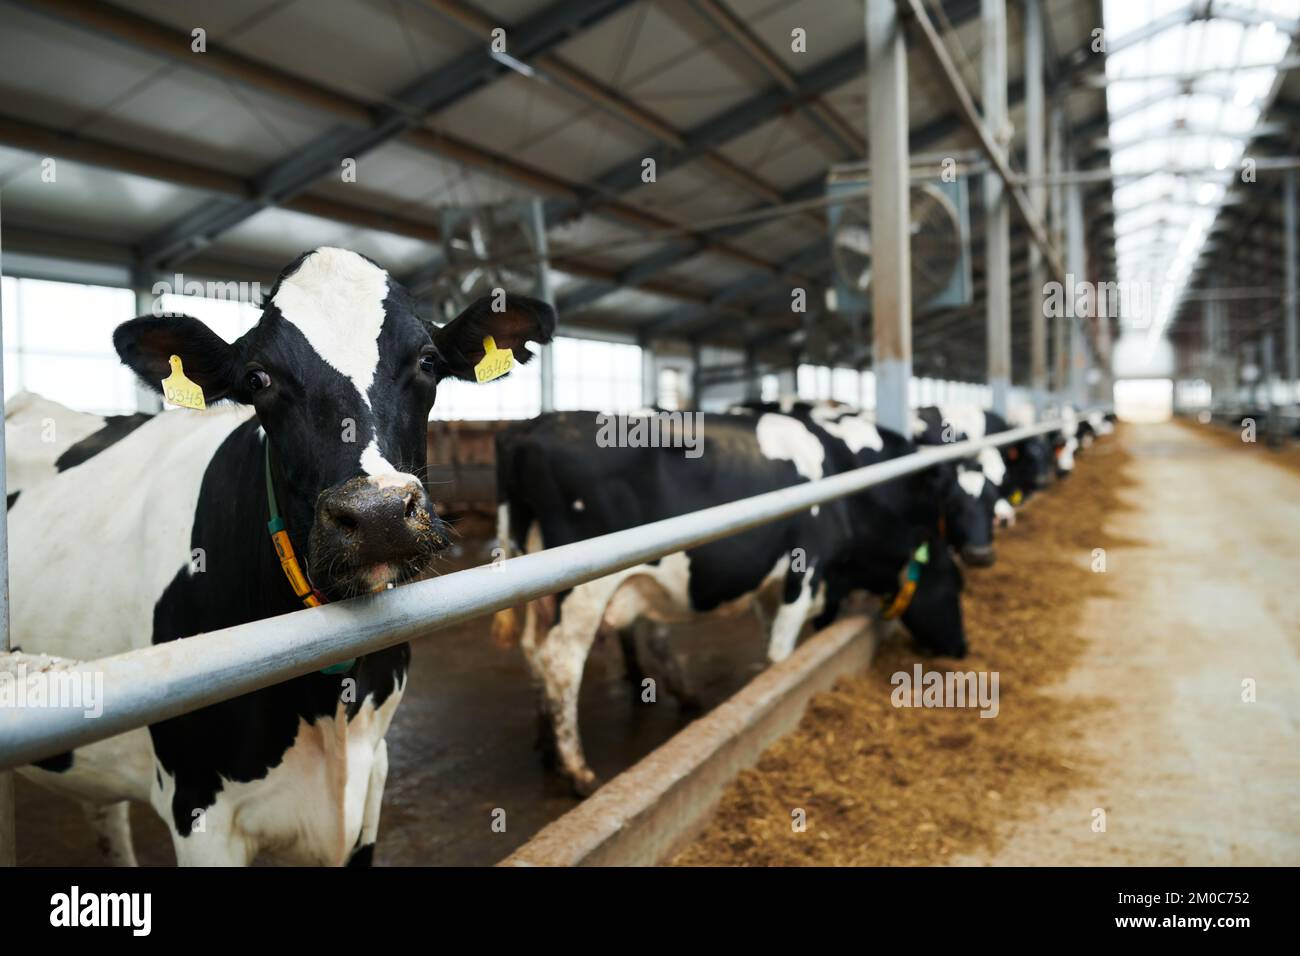 Mise au point sélective sur la vache à lait noir et blanc regardant la caméra tout en se tenant dans le lâcher contre la rangée d'autres bovins mangeant du fourrage Banque D'Images